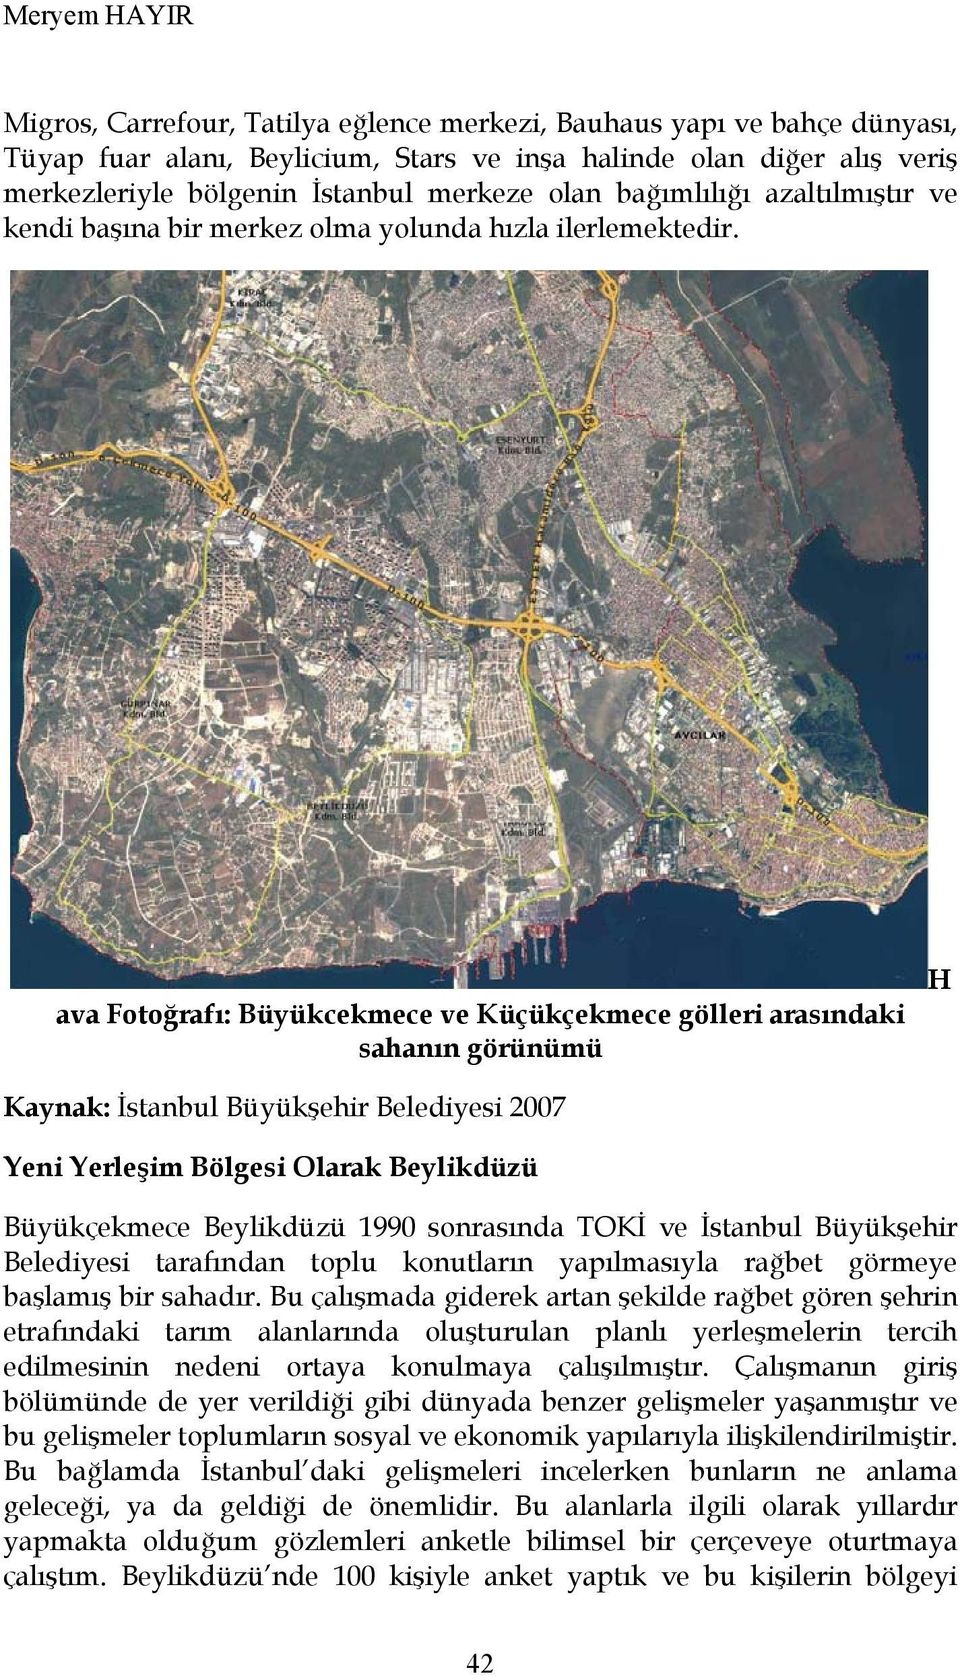 ava Fotoğrafı: Büyükcekmece ve Küçükçekmece gölleri arasındaki sahanın görünümü H Kaynak: İstanbul Büyükşehir Belediyesi 2007 Yeni Yerleşim Bölgesi Olarak Beylikdüzü Büyükçekmece Beylikdüzü 1990